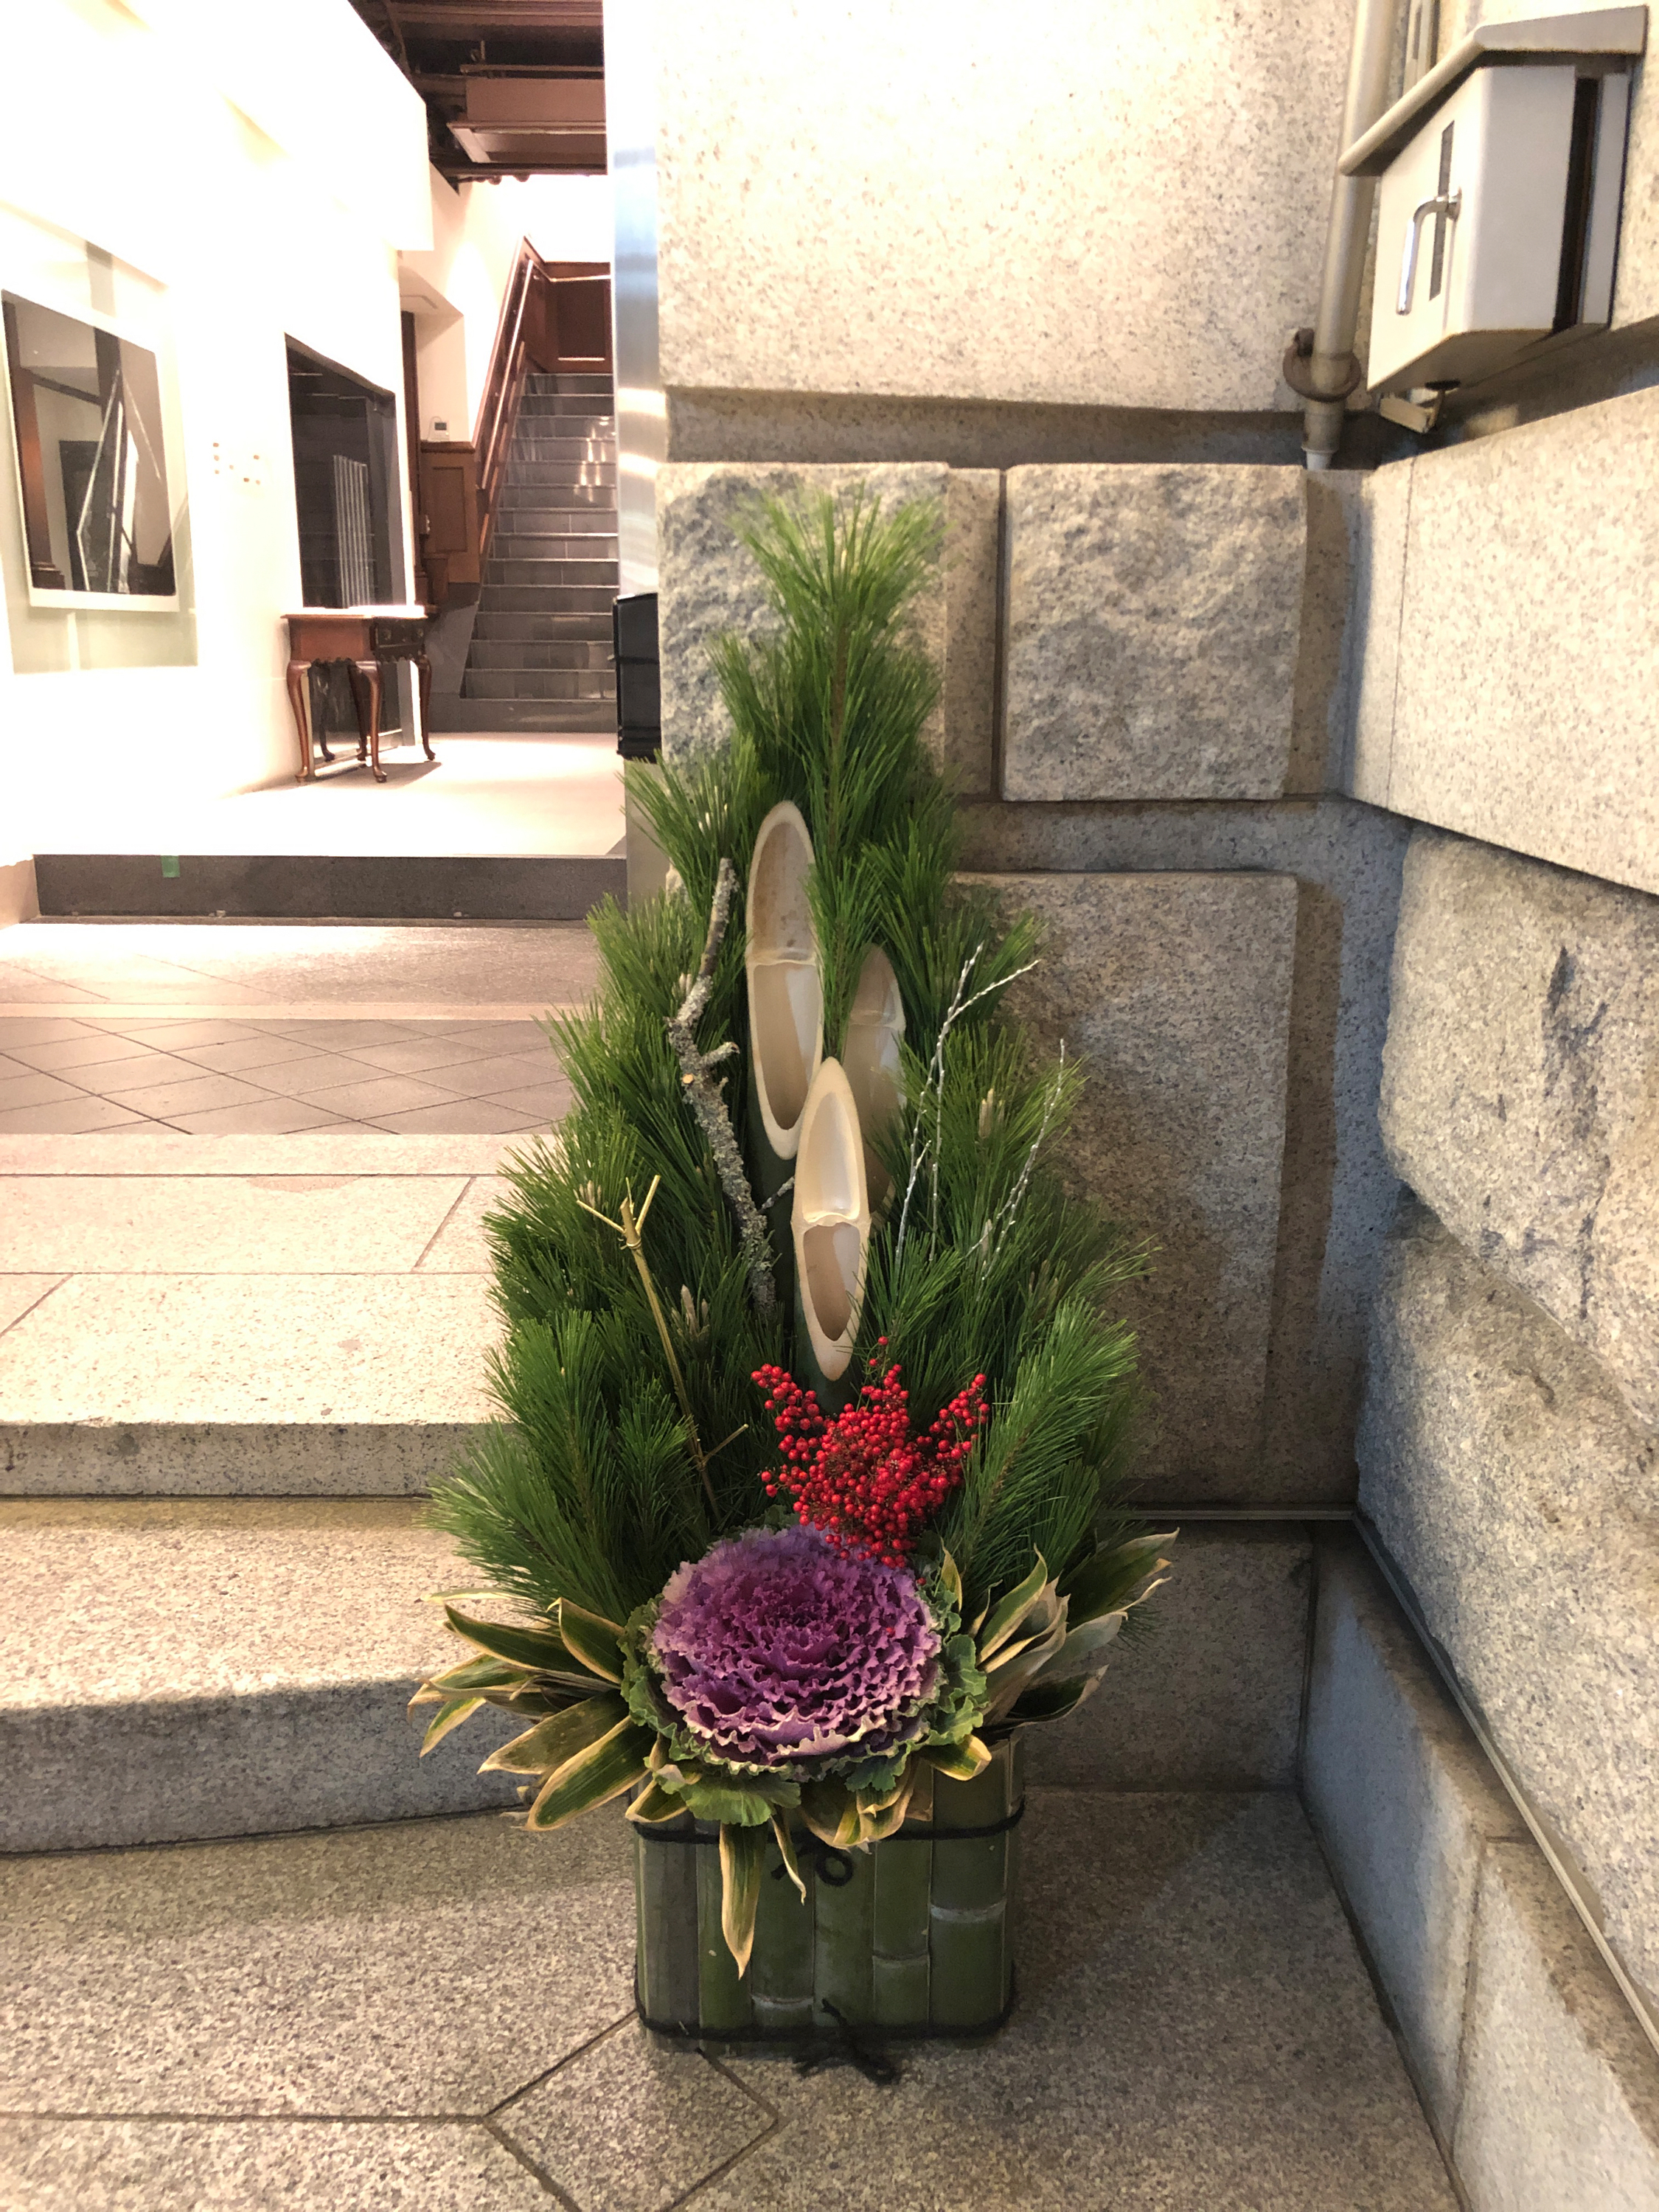 日本正月 新年 日本的正月最初是举行祭祀祖先英灵的活动节日 与八月的盂兰盆节相对的半年一次的祭祀节期 职人 Com博客